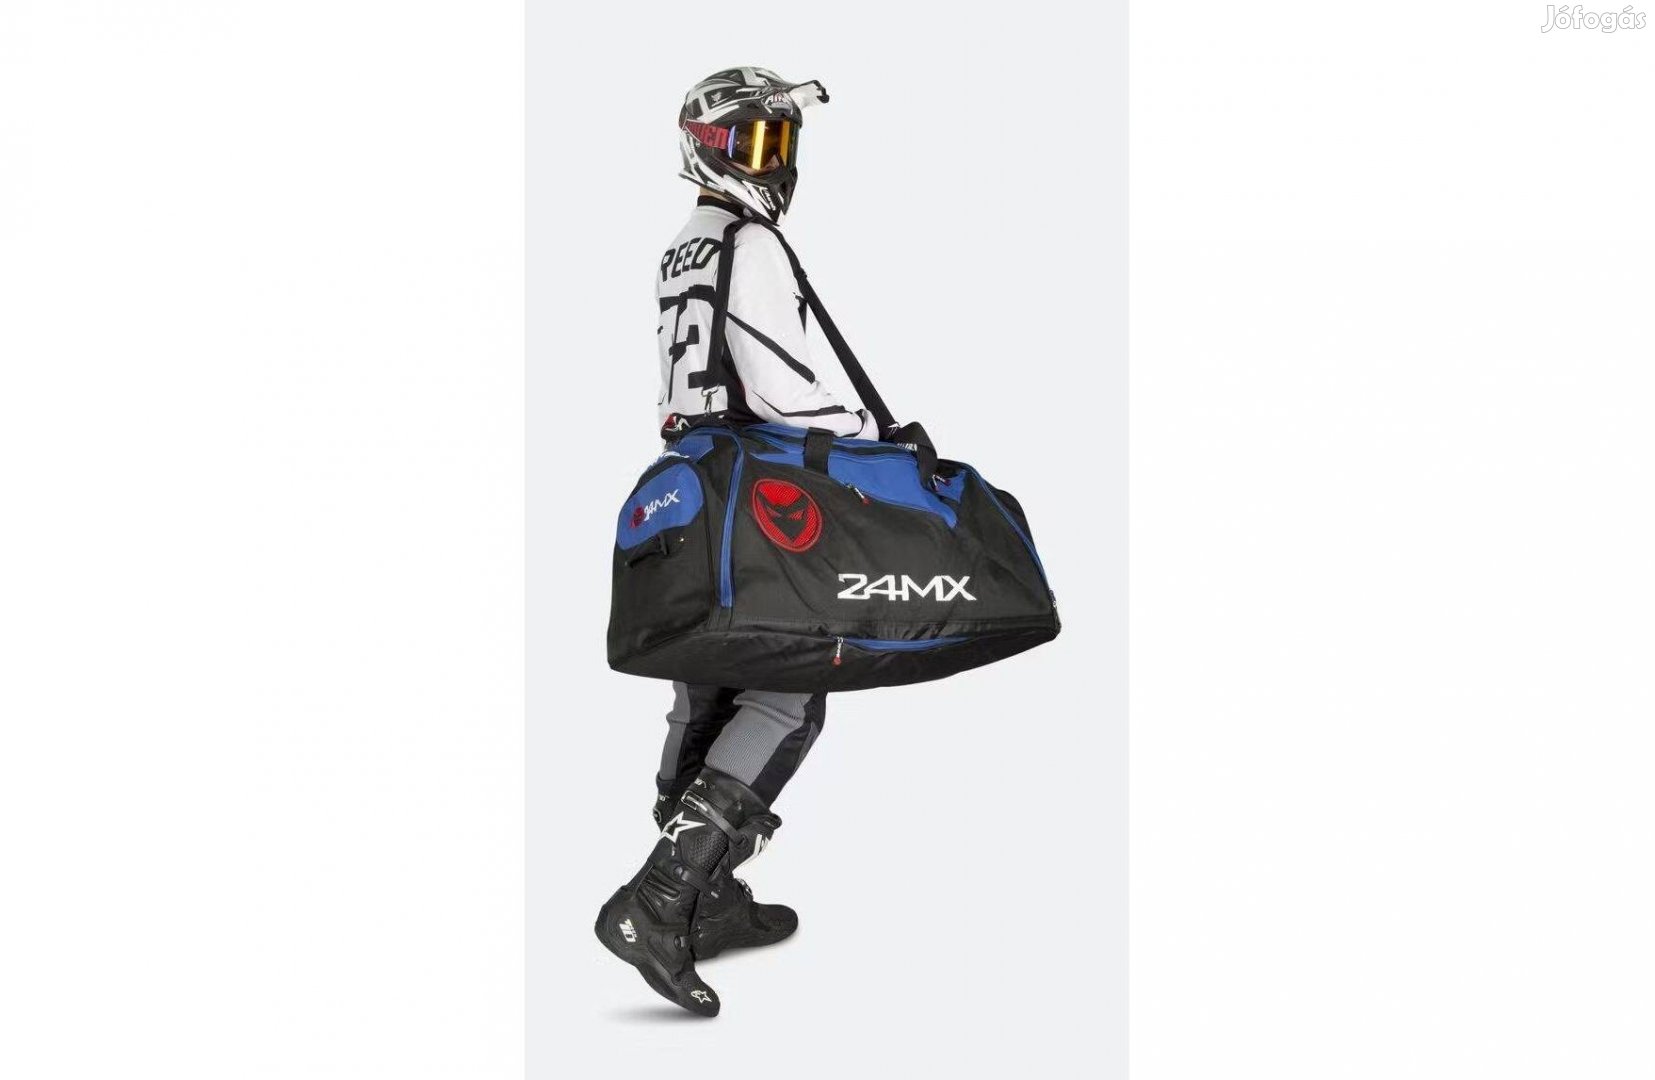 Új 24MX kék/fekete MX, cross táska, sporttáska, utazótáska, gearbag